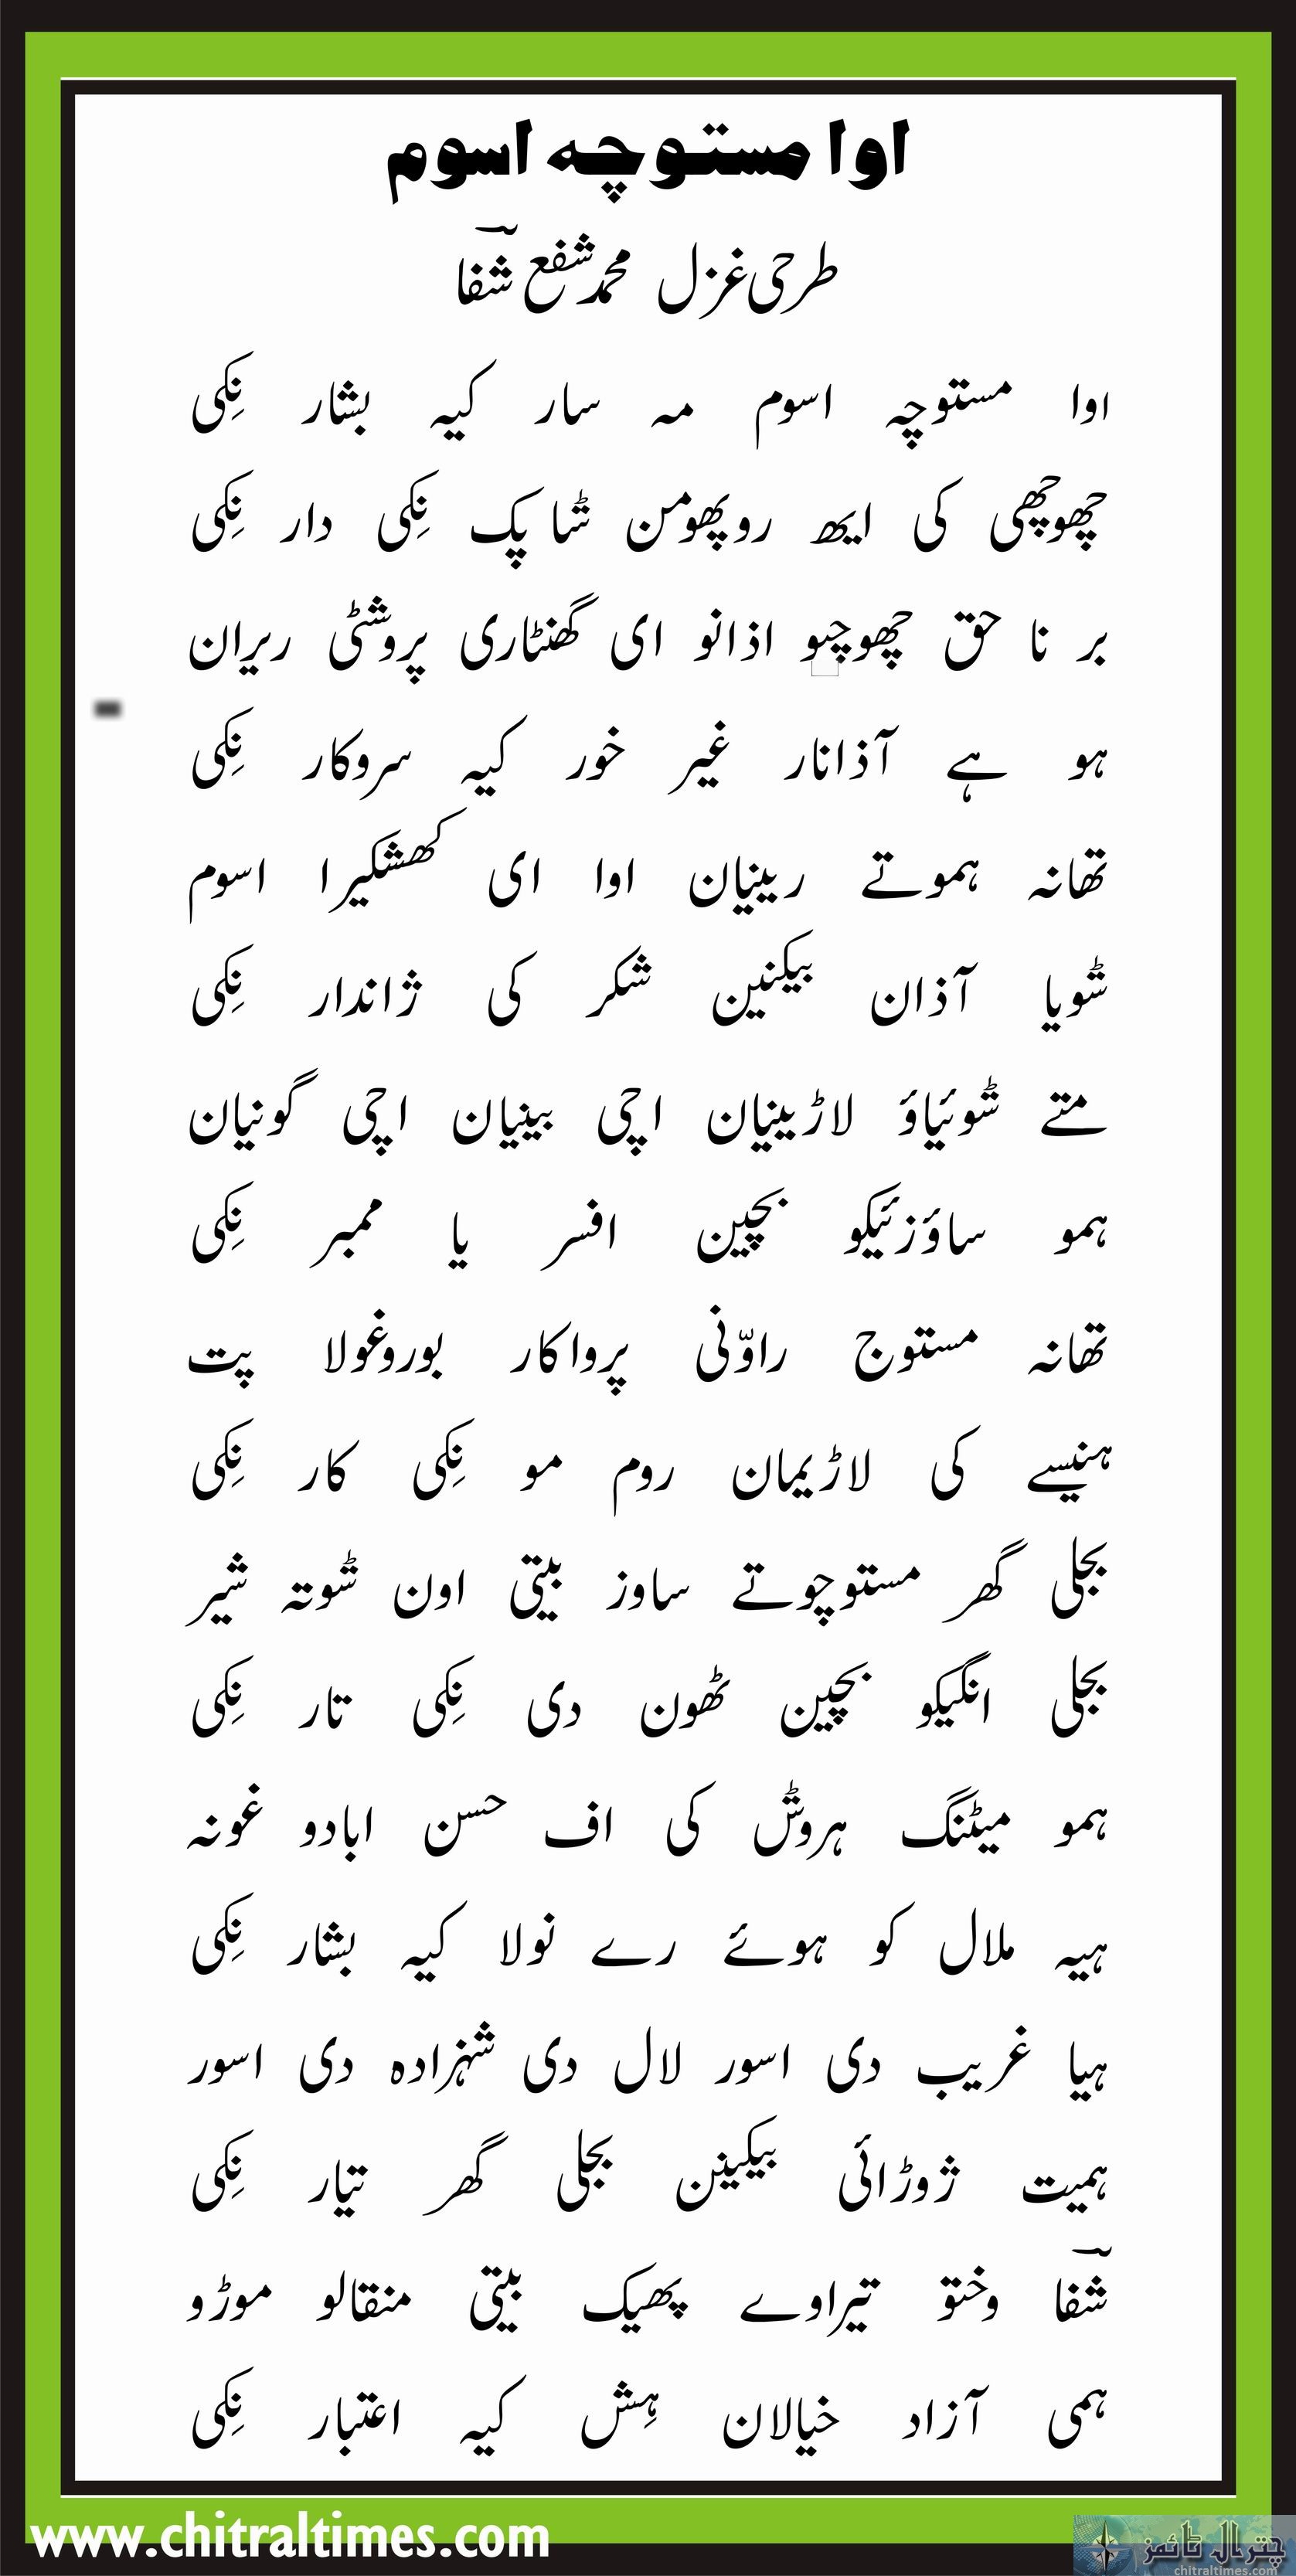 shafi shifa poetry